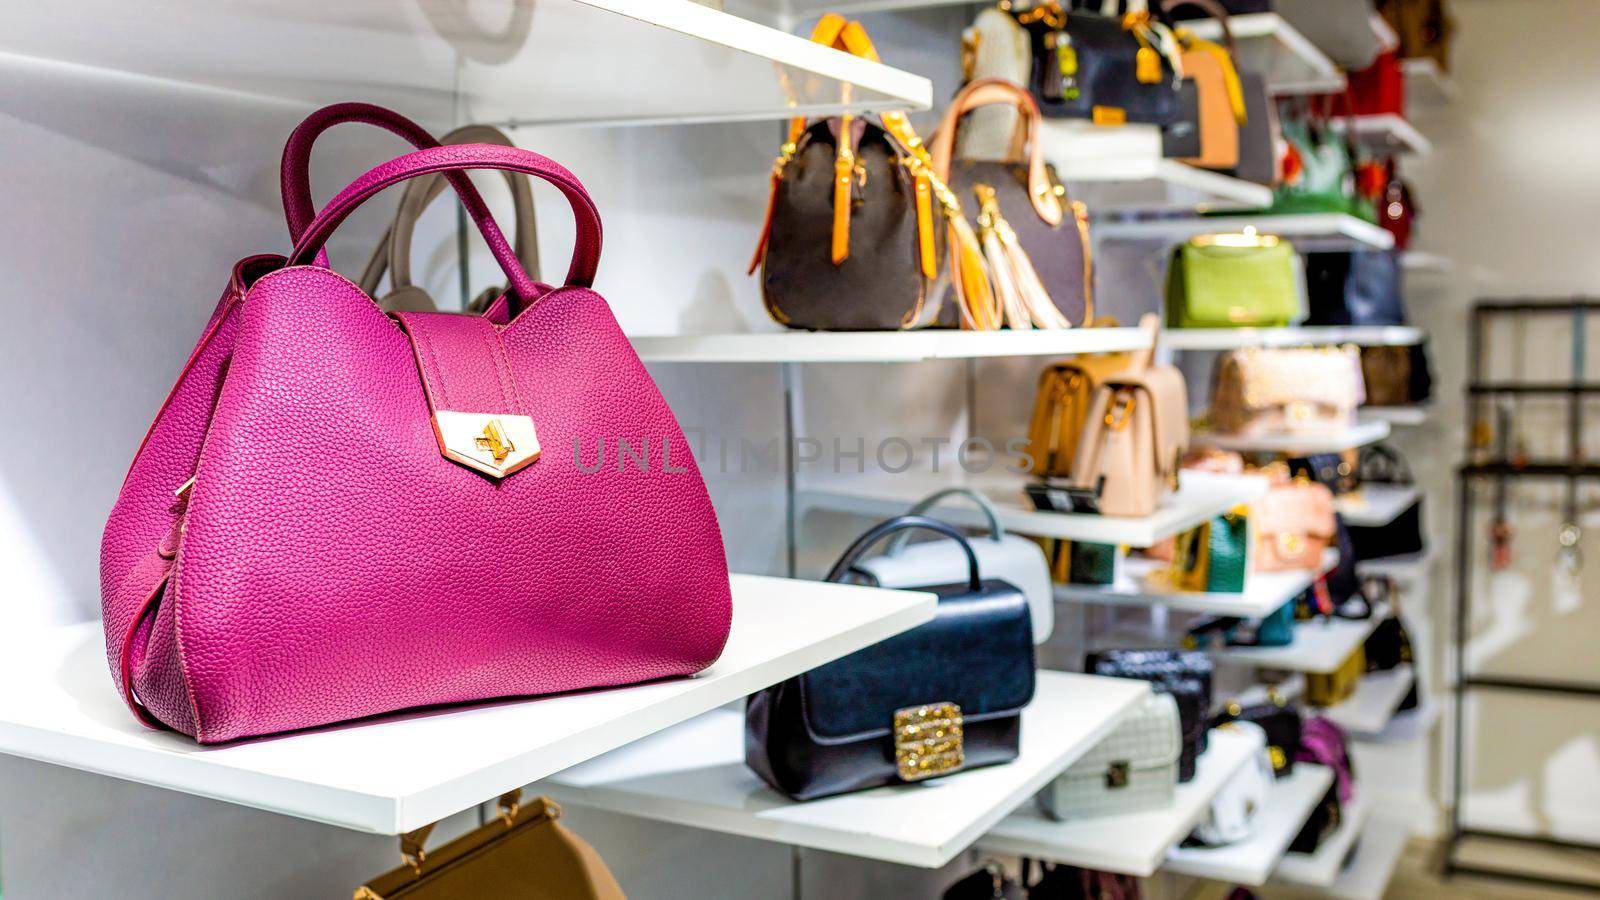 Handbags in a luxury fashion store by ferhad